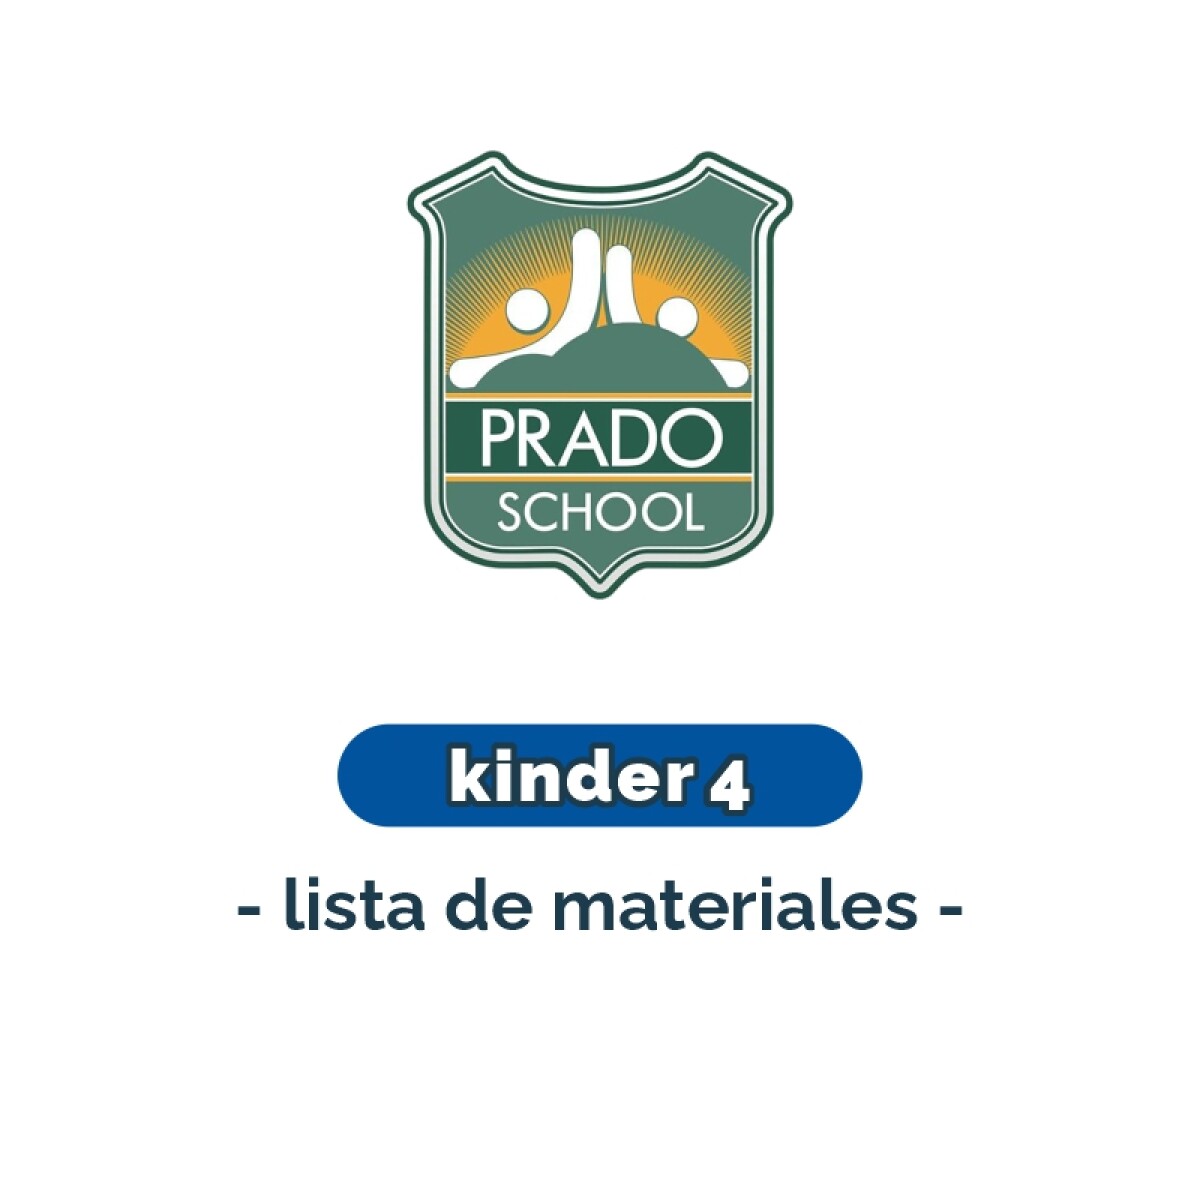 Lista de materiales - Kinder 4 Prado School 